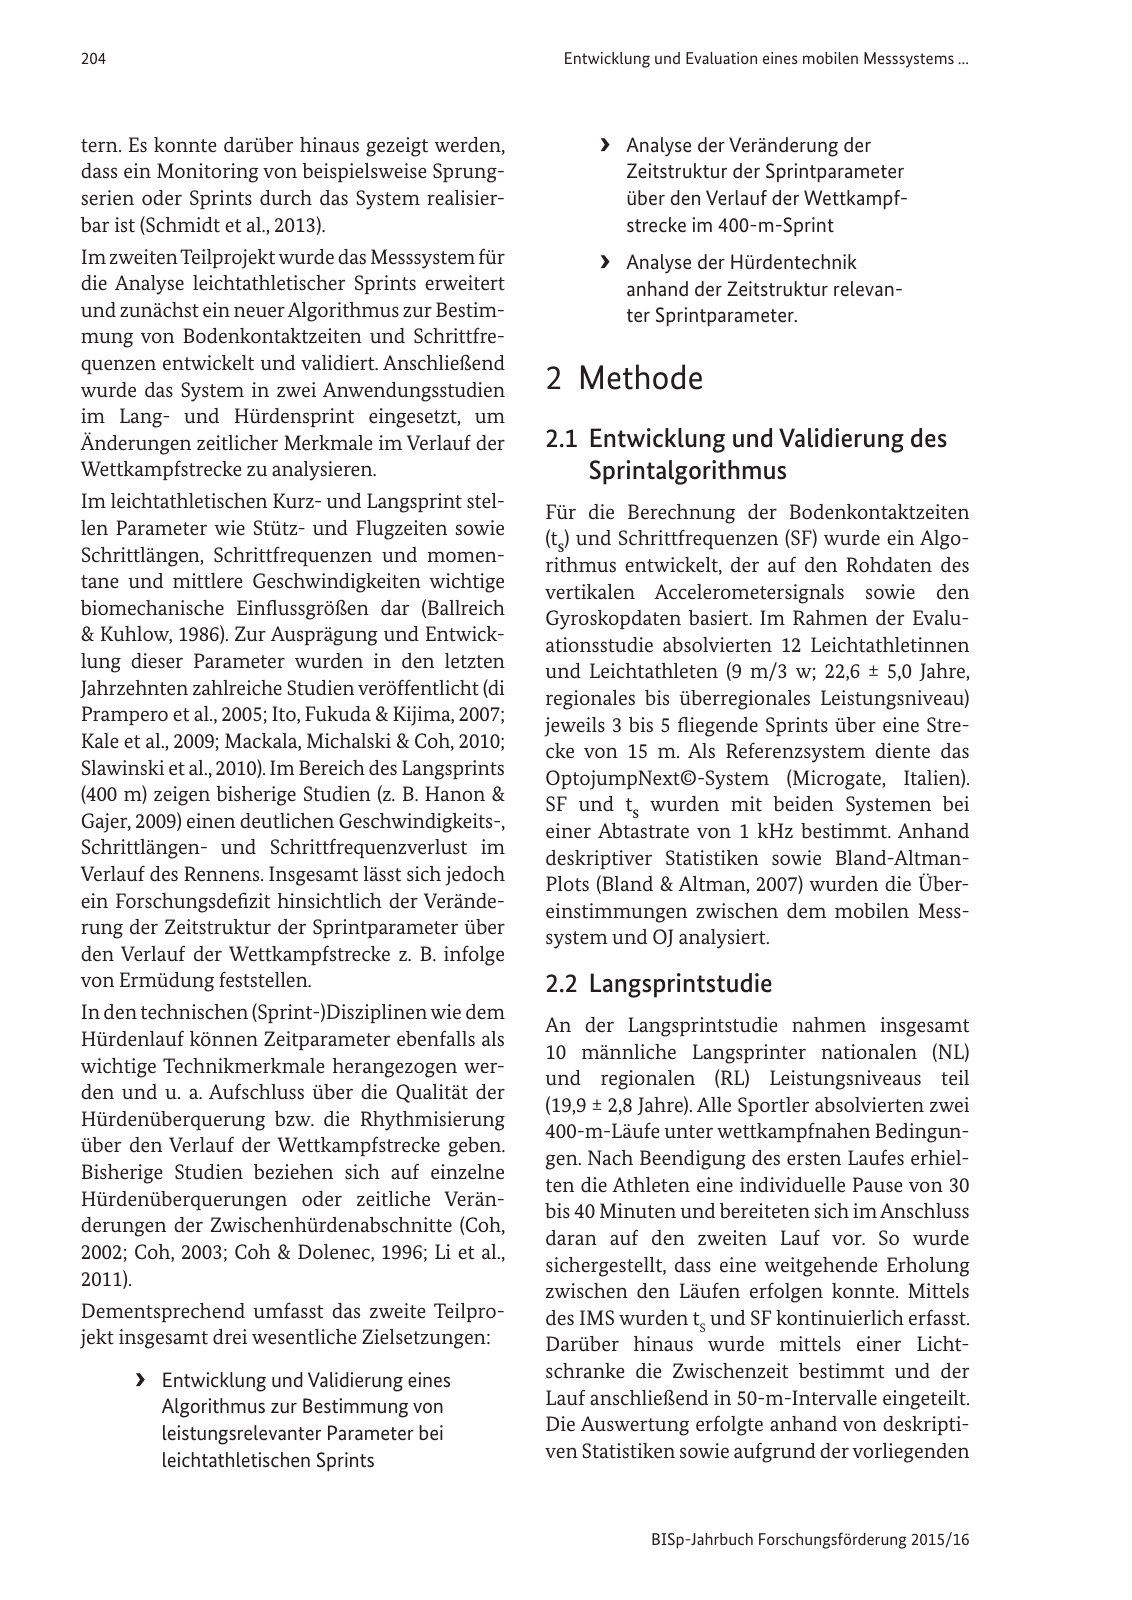 Vorschau BISp-Jahrbuch Forschungsförderung 2015/16 Seite 206